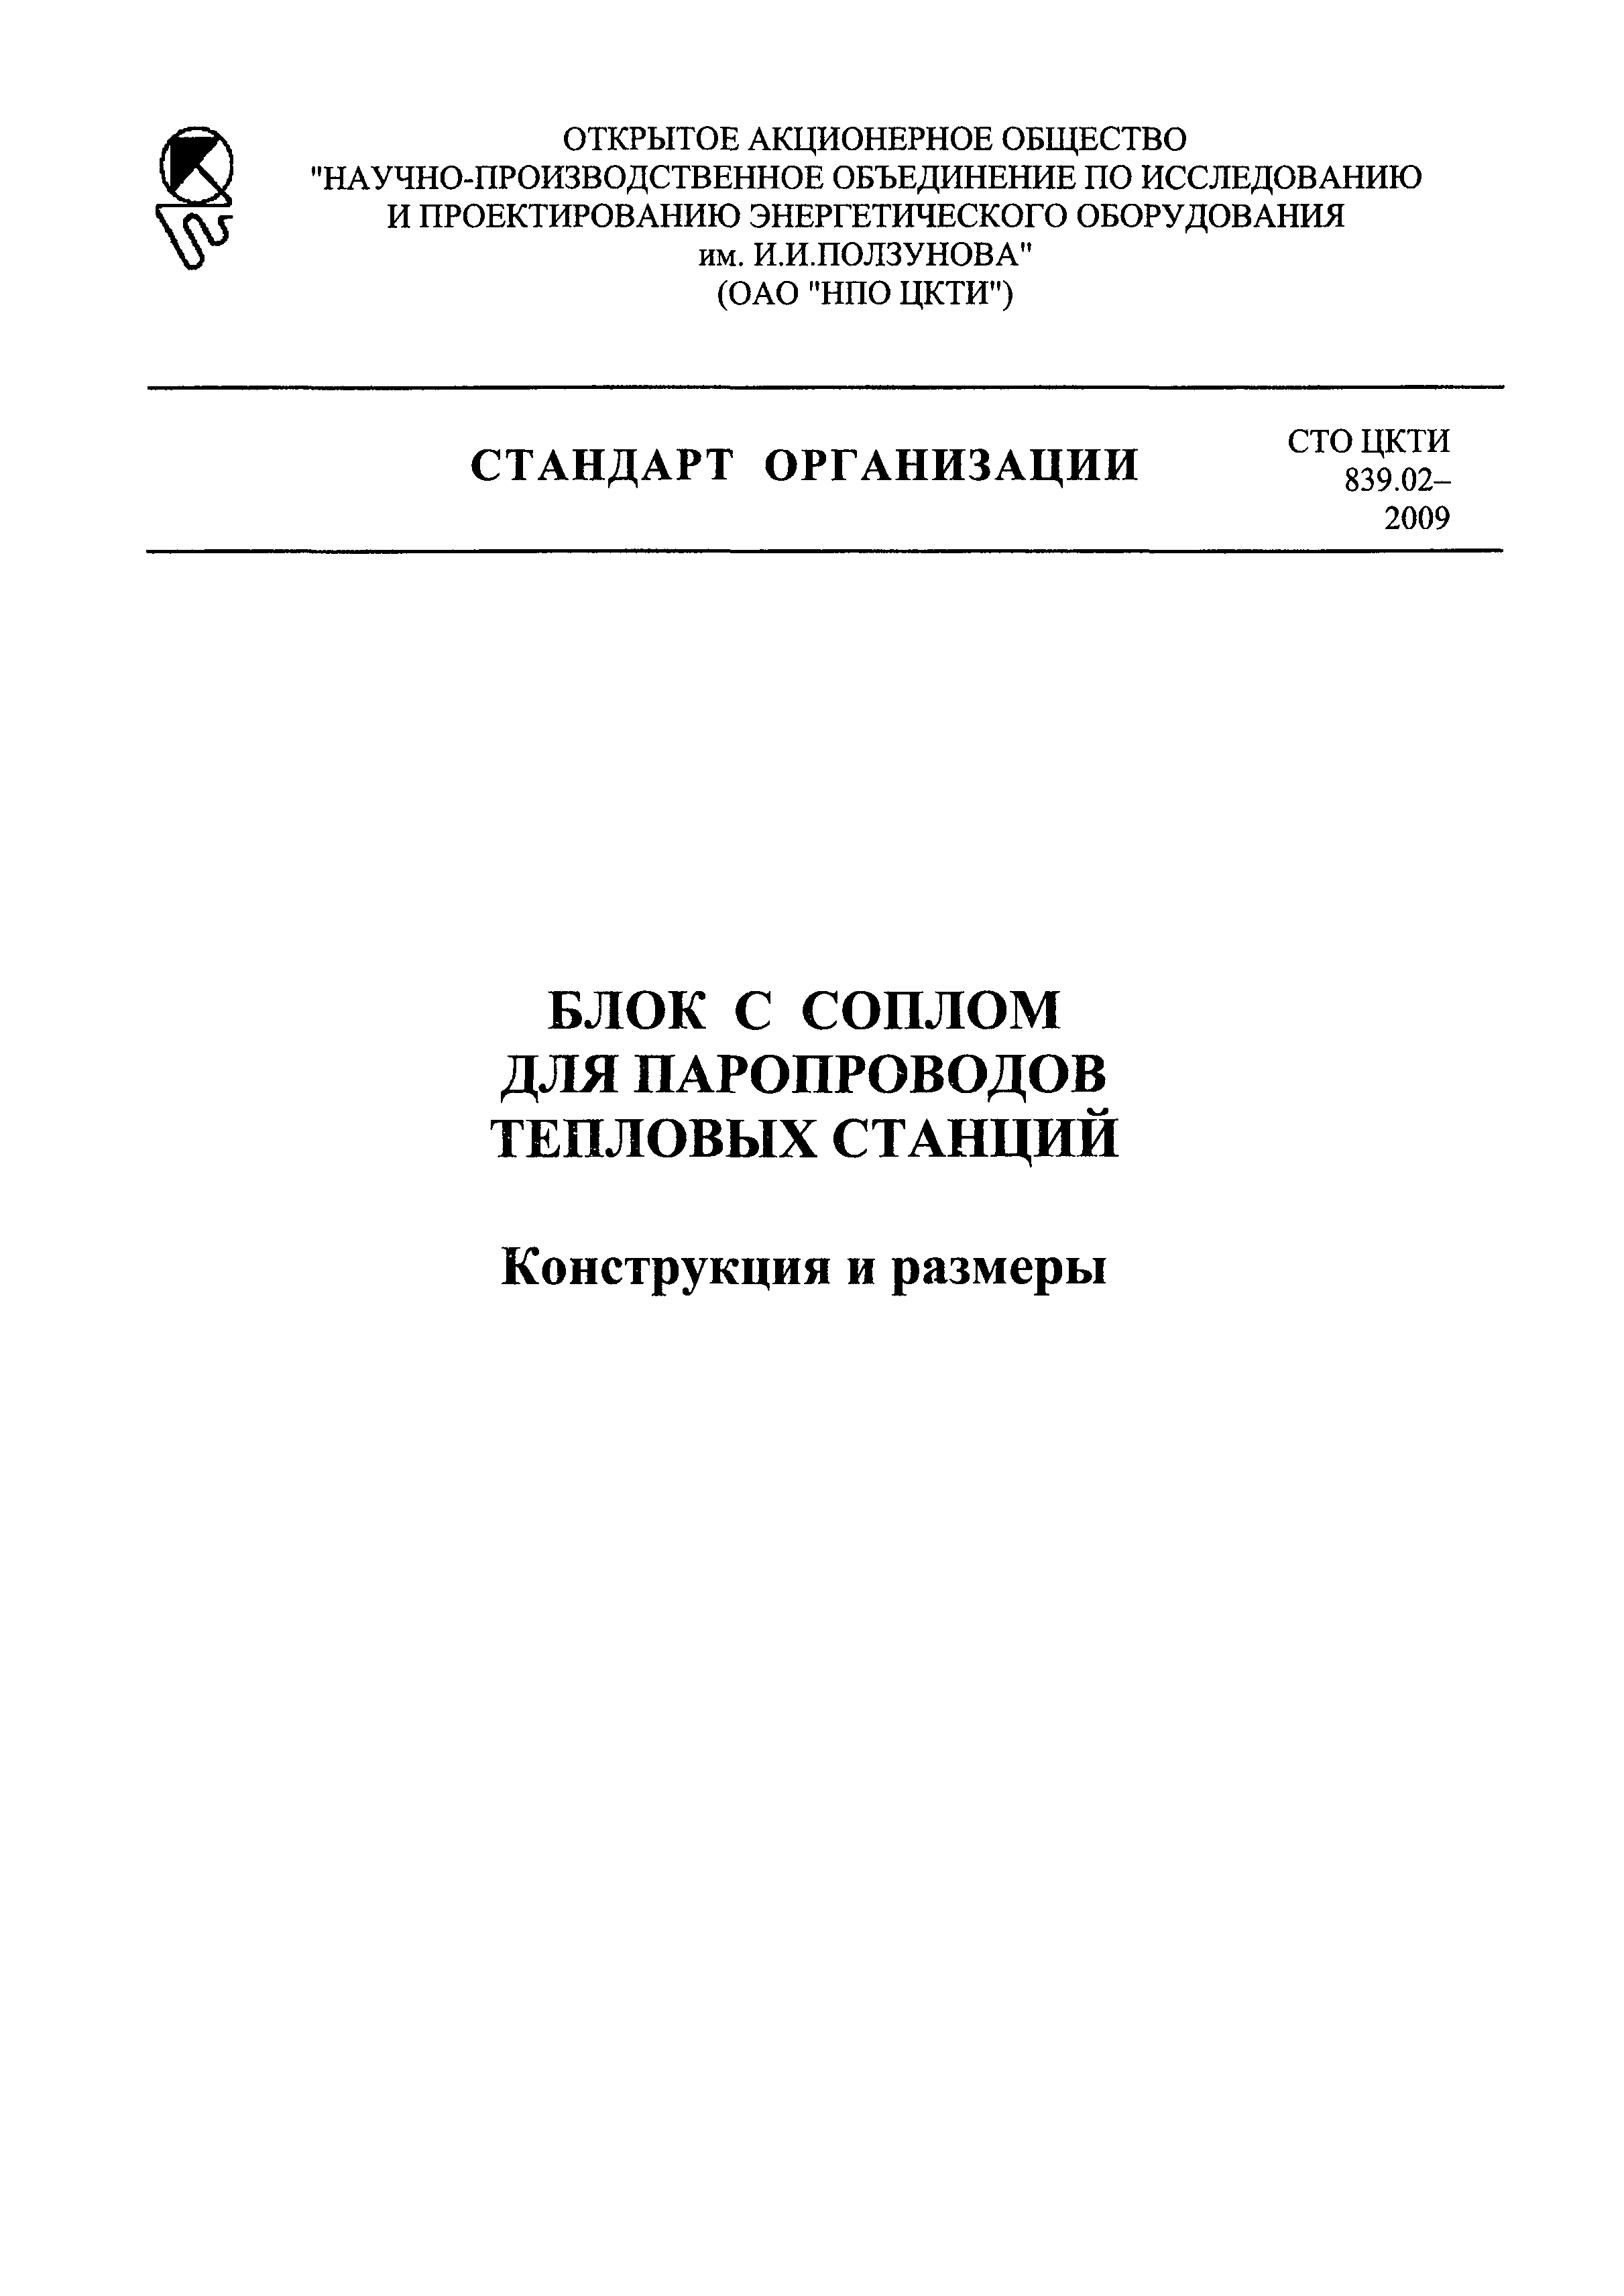 СТО ЦКТИ 839.02-2009